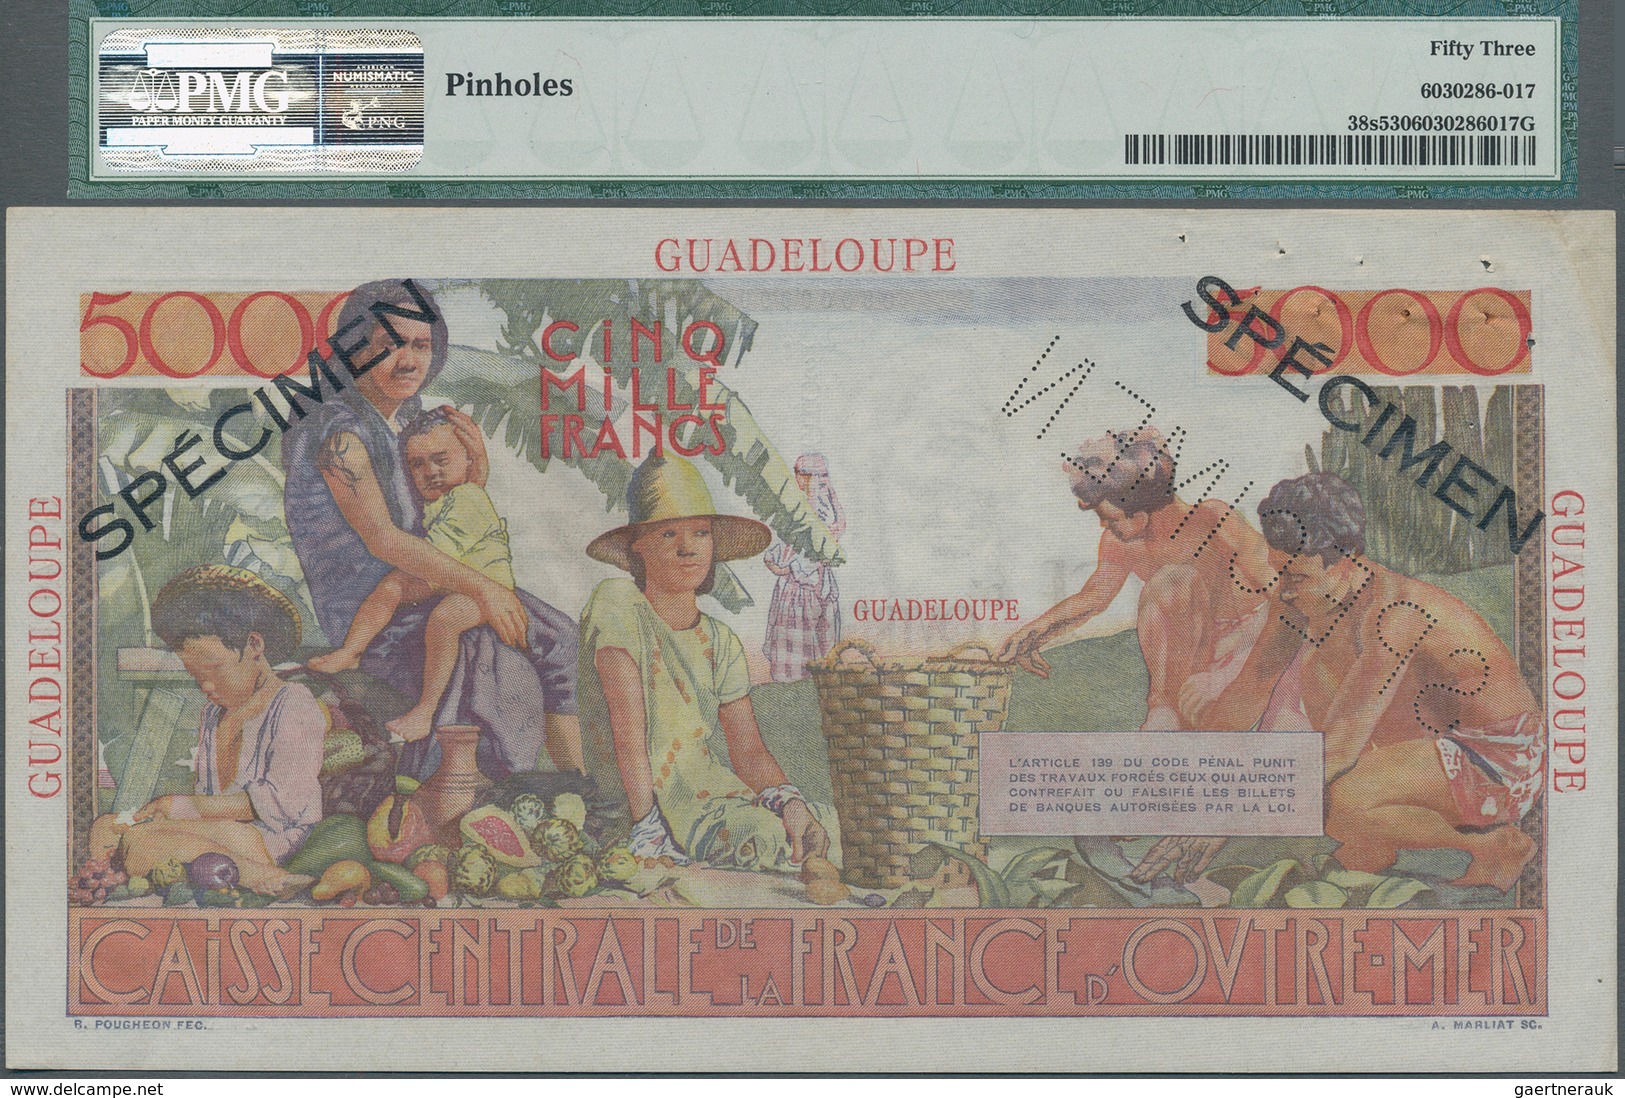 Guadeloupe: Caisse Centrale De La France D'Outre-Mer 5000 Francs ND(1952) SPECIMEN, P.38s, Tiny Dint - Otros – América